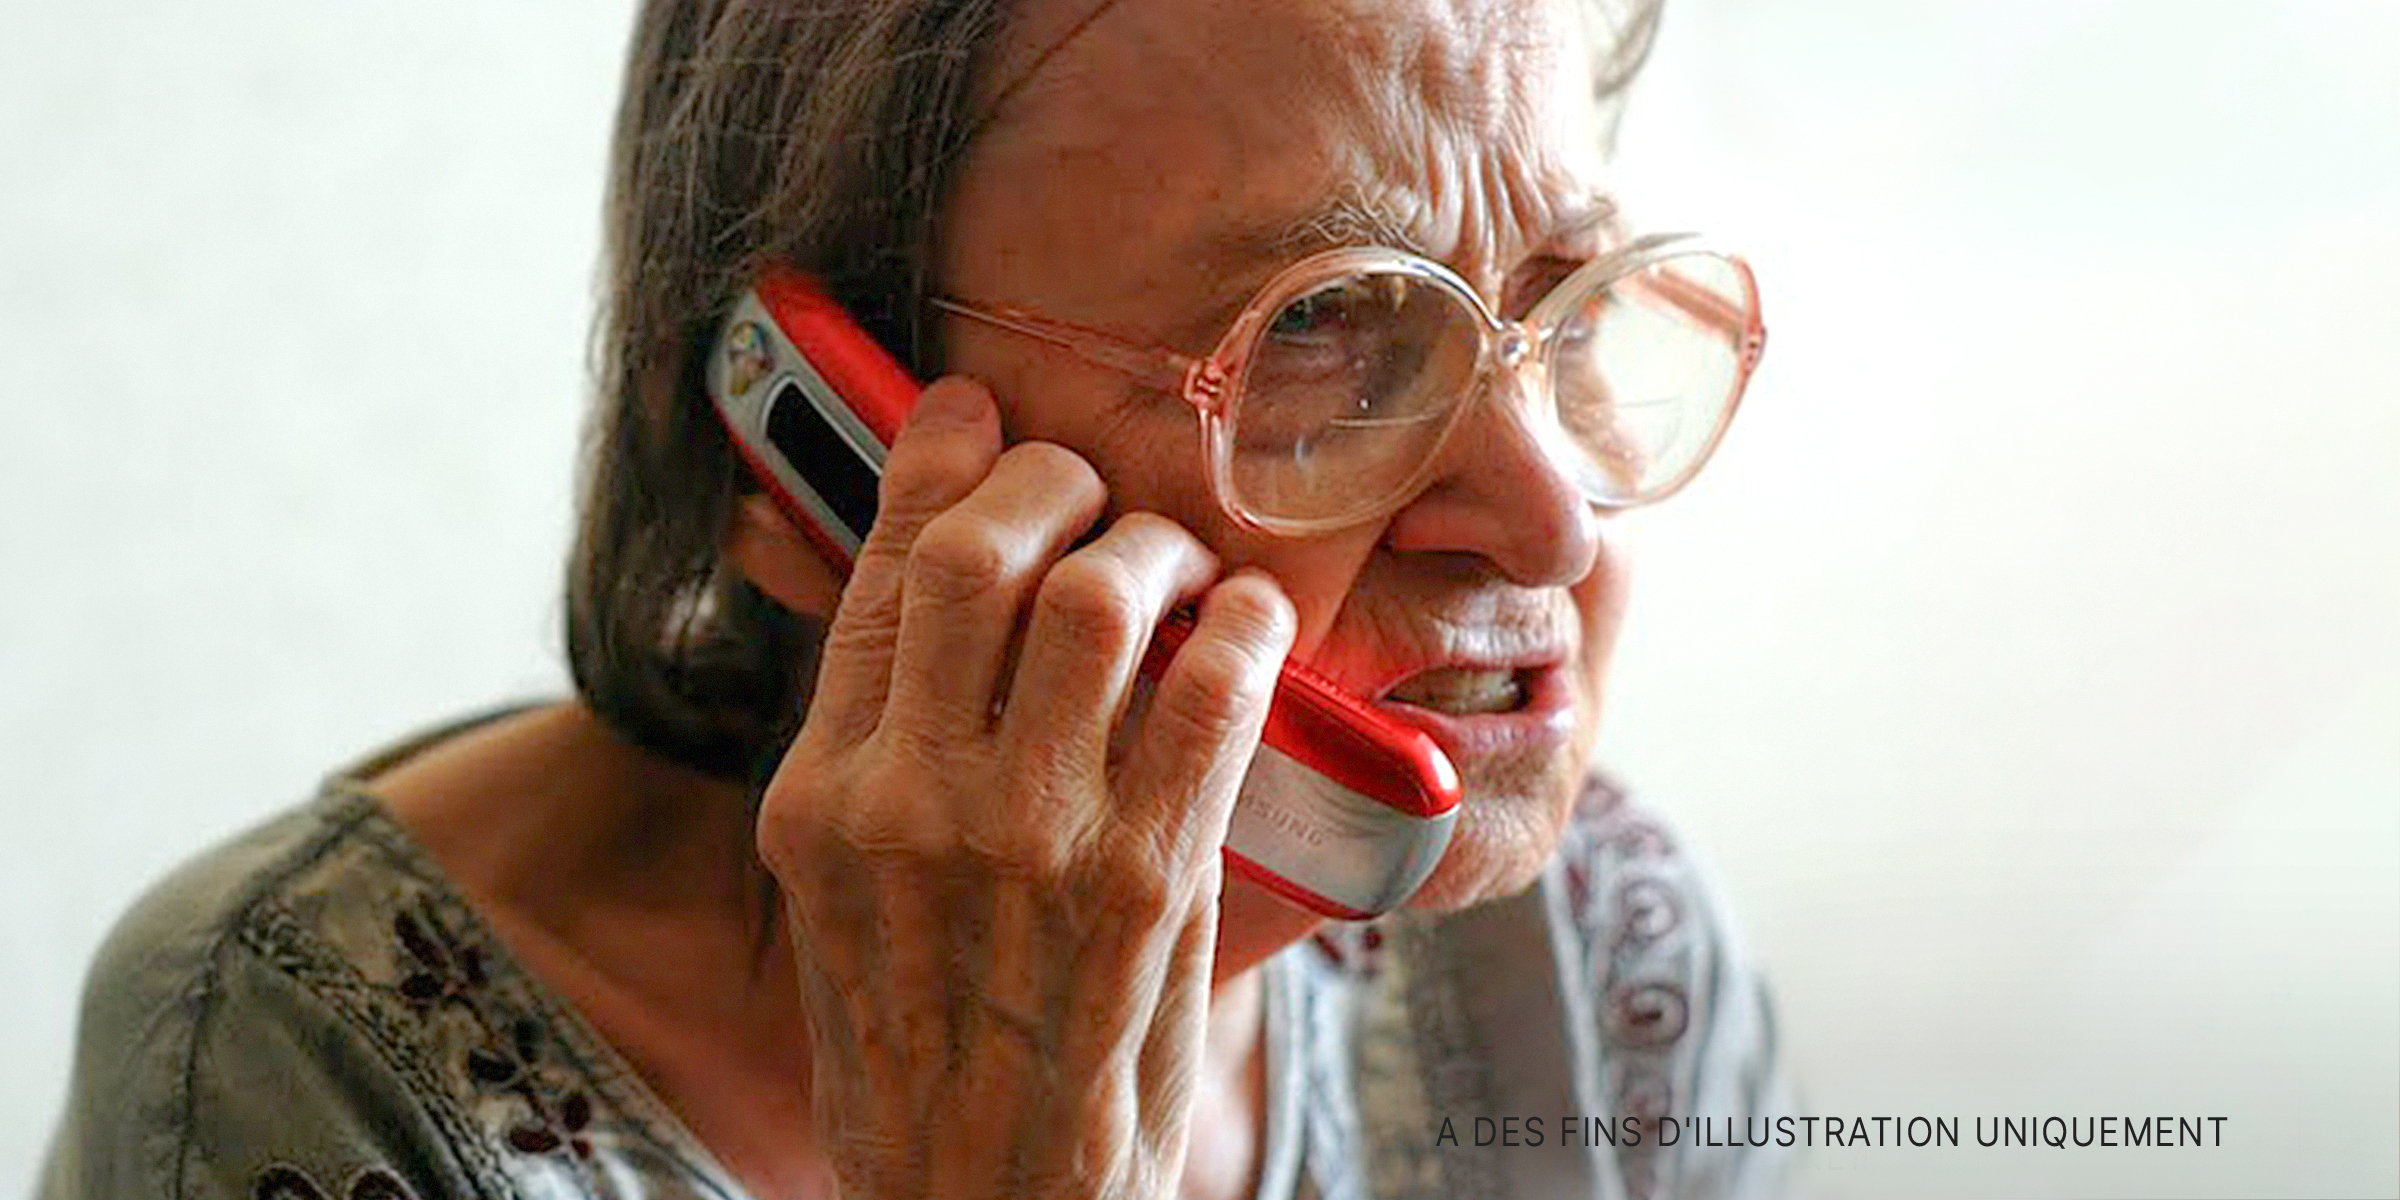 Une vieille femme parlant au téléphone | Source : Flickr.com/borosjuli/CC BY 2.0